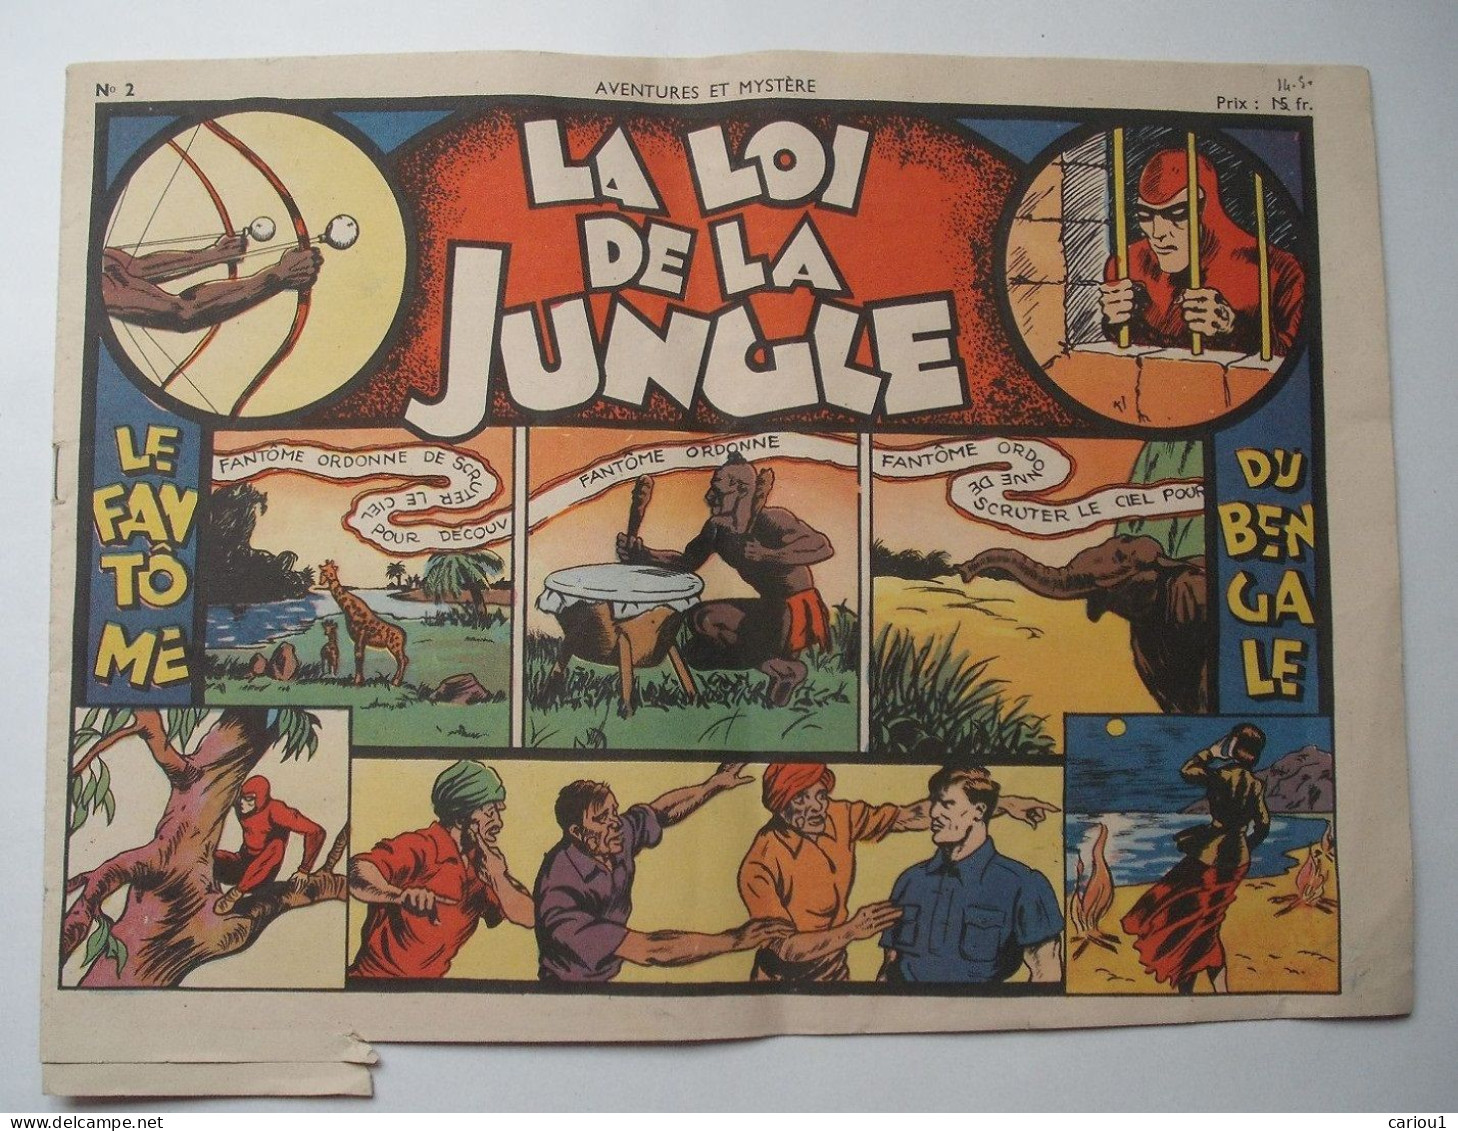 C1  LE FANTOME La LOI DE LA JUNGLE Aventures Et Mystere # 2 1947 SAGE The Phantom PORT INCLUS France - Originalausgaben - Franz. Sprache